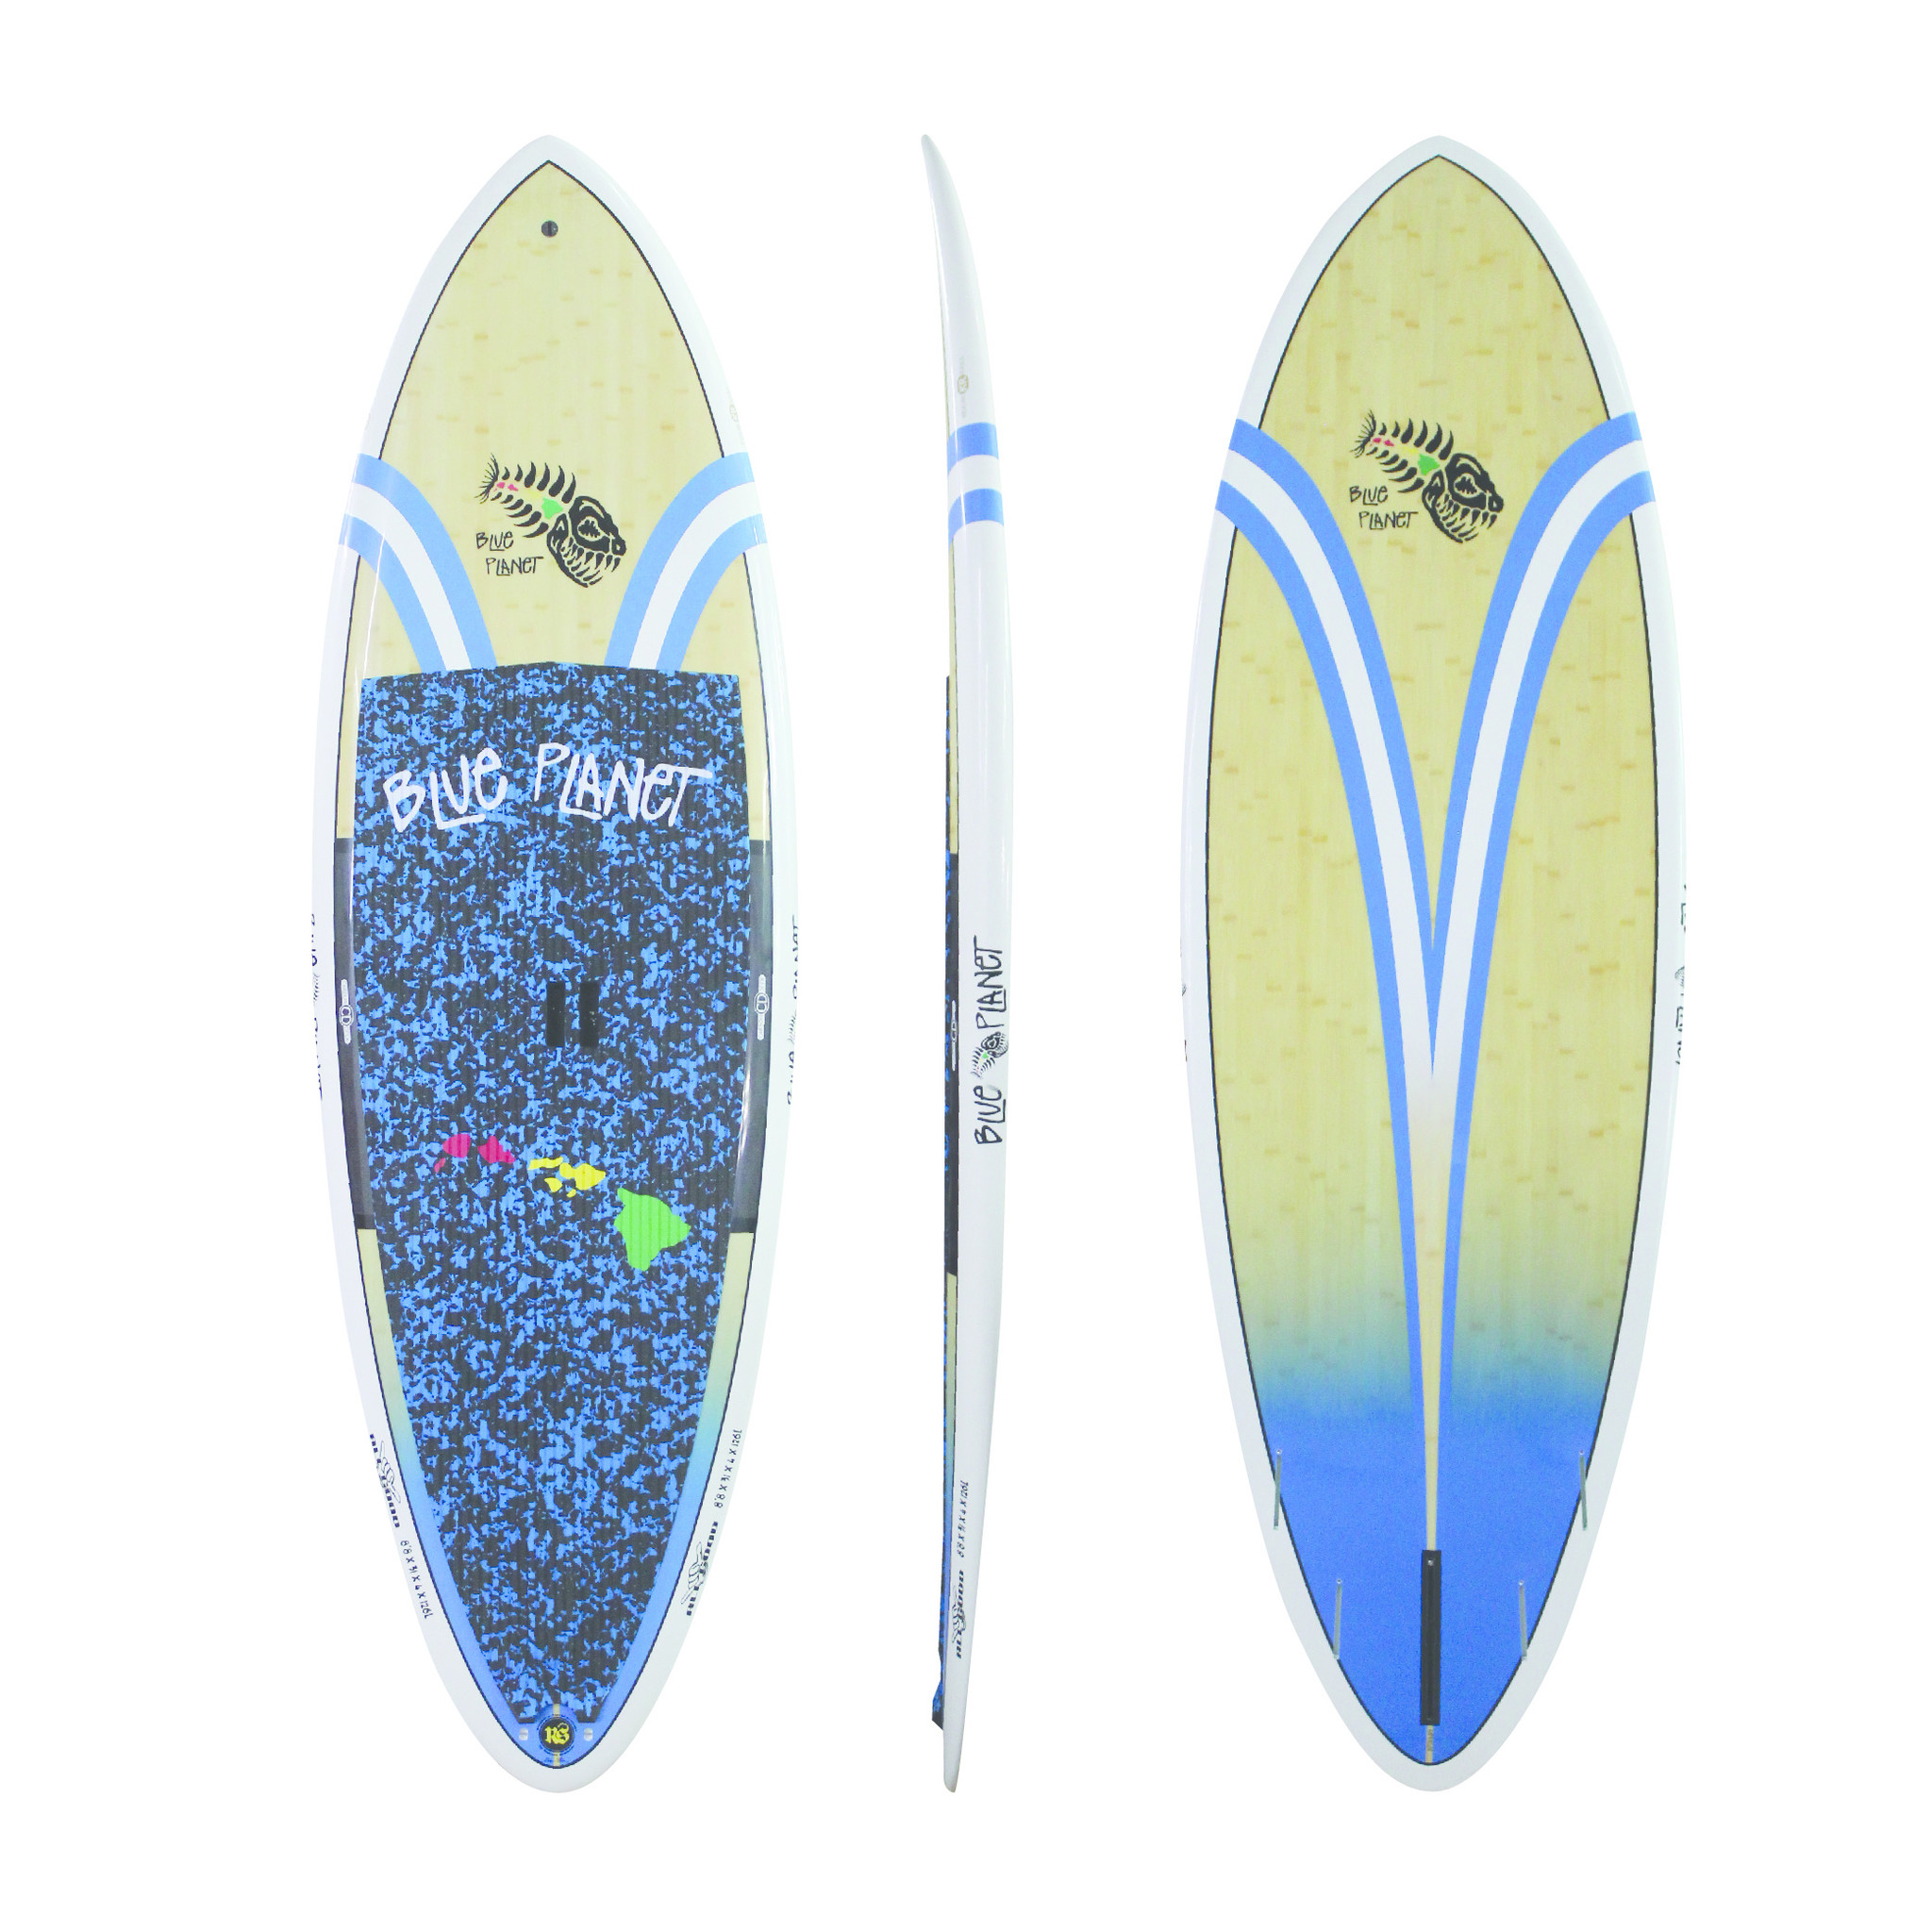 速くおよび自由な PLANET SURF サーフボード8.4 サーフィン - bedrock.llc